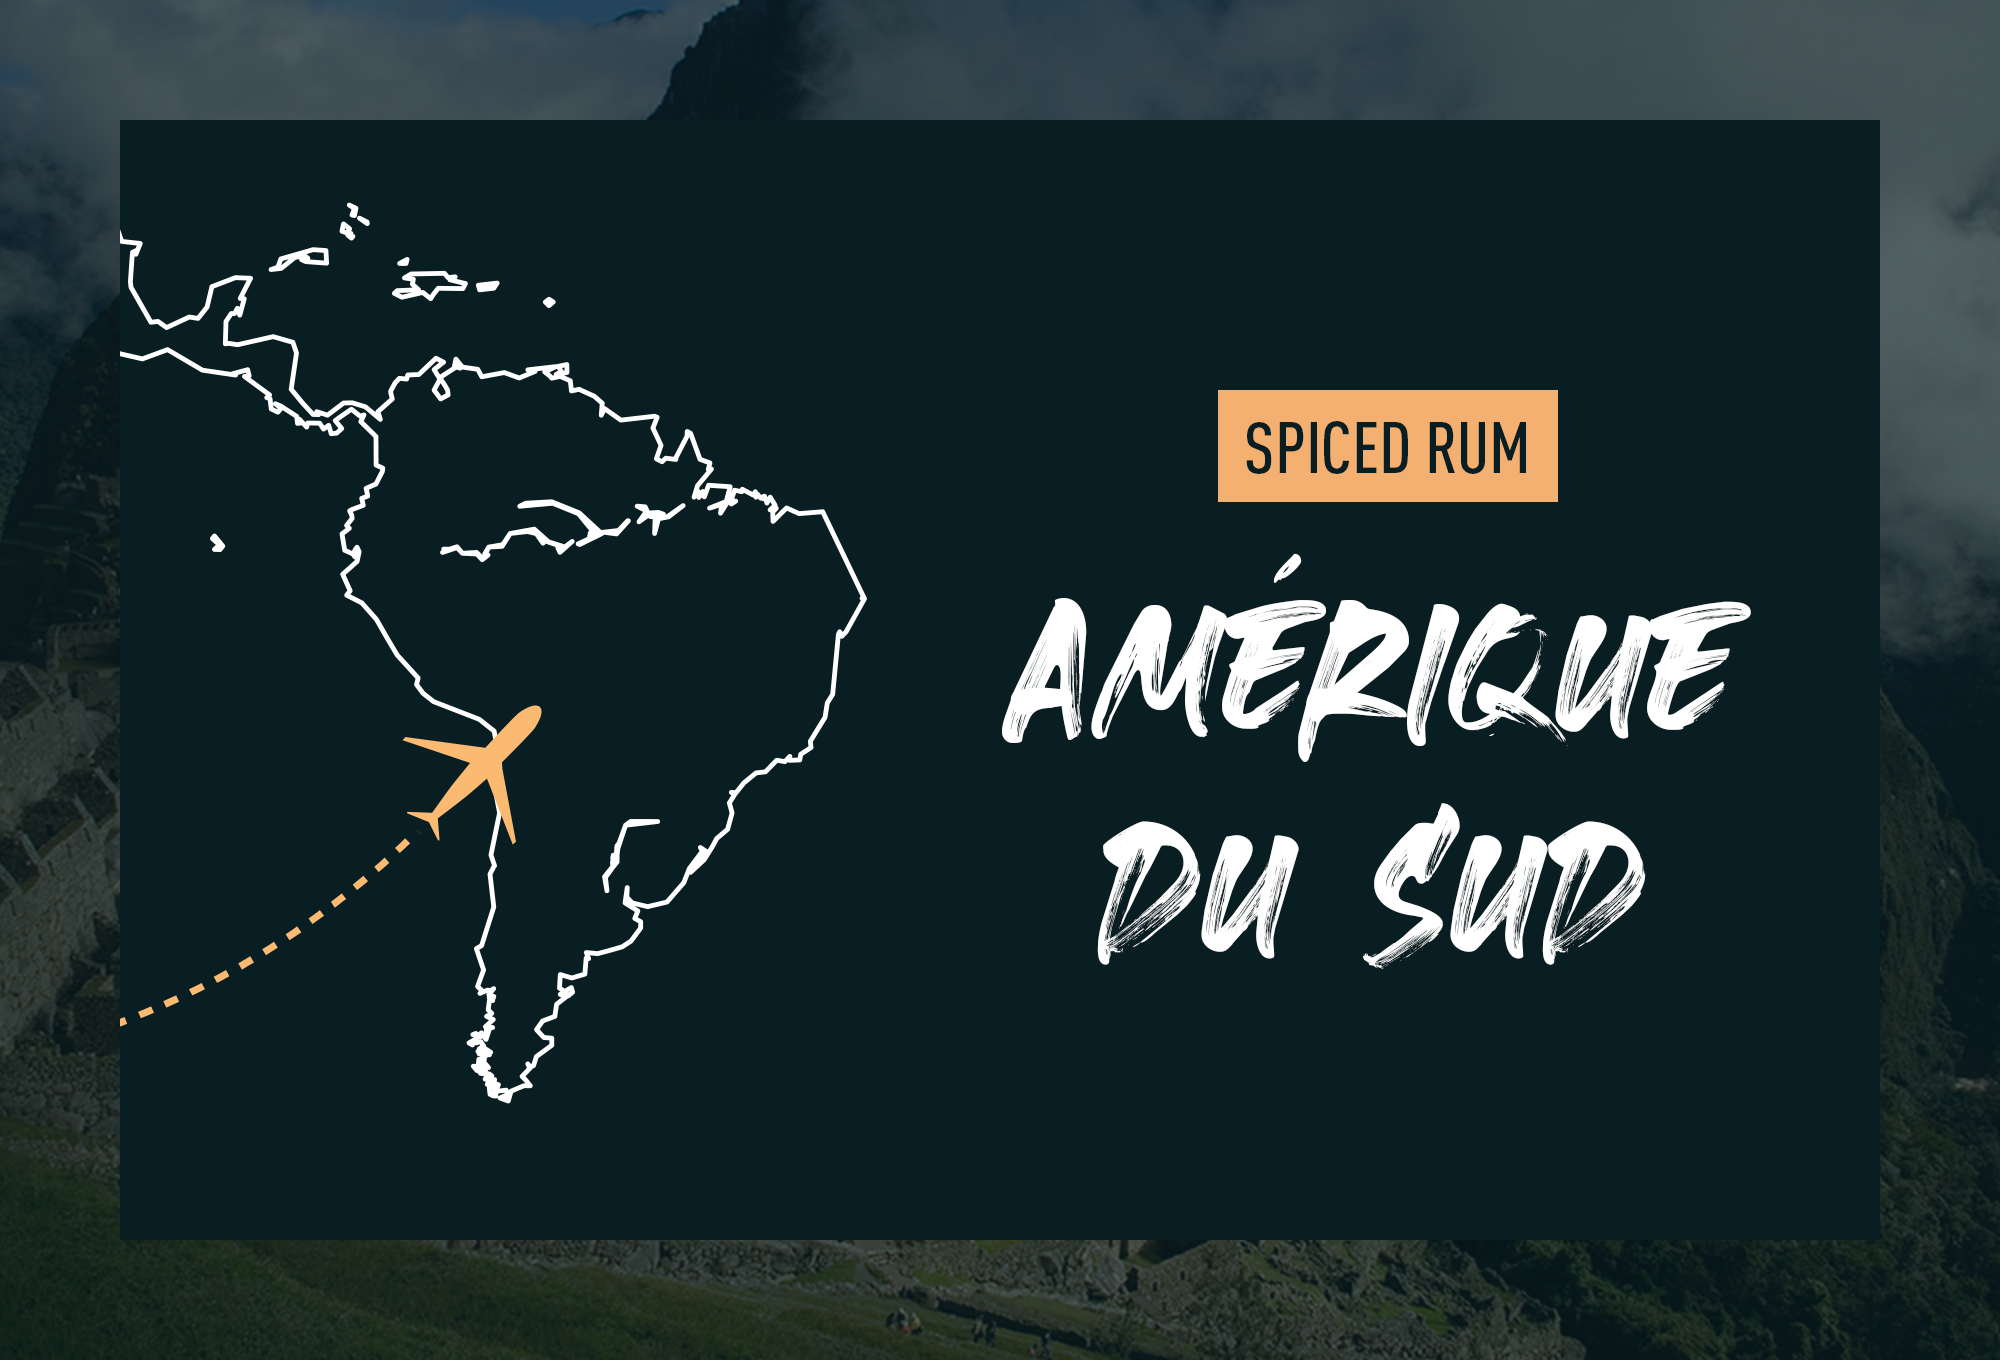 Les Spiced rum d'Amérique du sud